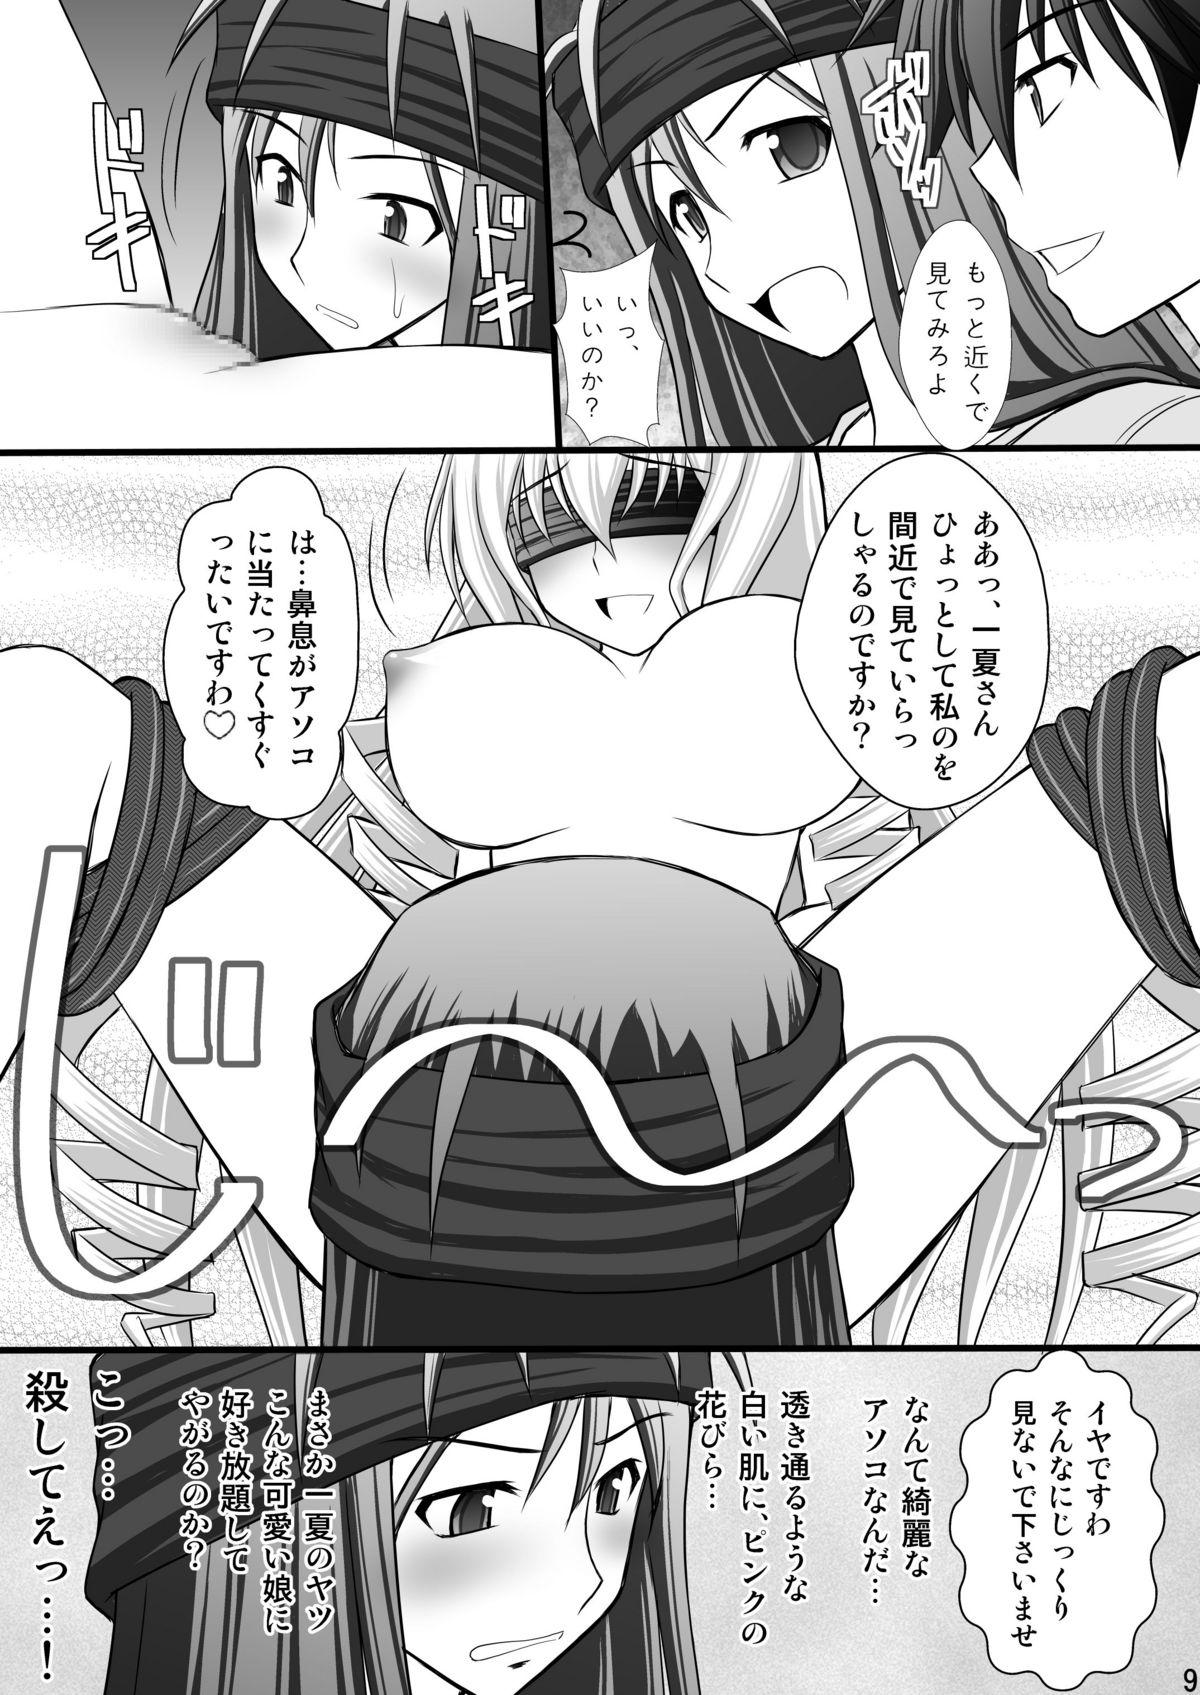 Usa Ichika no Choukyou Nisshi 3 - Infinite stratos Punishment - Page 8